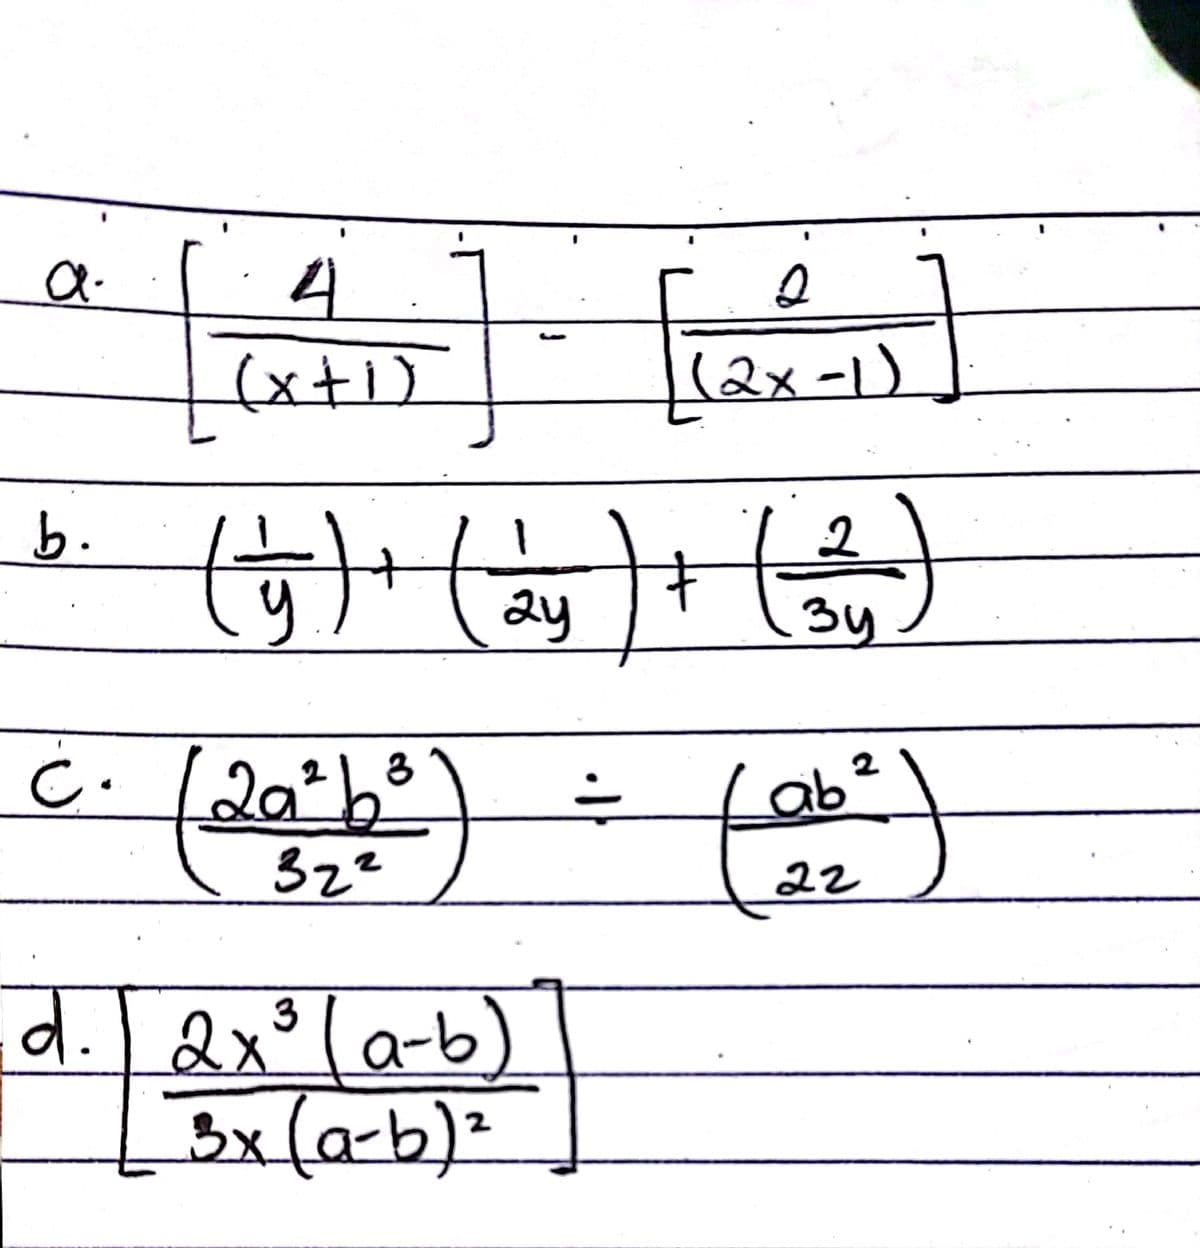 %3D
4
(x+1)
(२x -1)
(प)" (2) (®
b.
ay
34
८. [२०*}
Lab²
ab ?
32²
२2
d.I dx°)
la-b
3
3x(a-b)²
2
